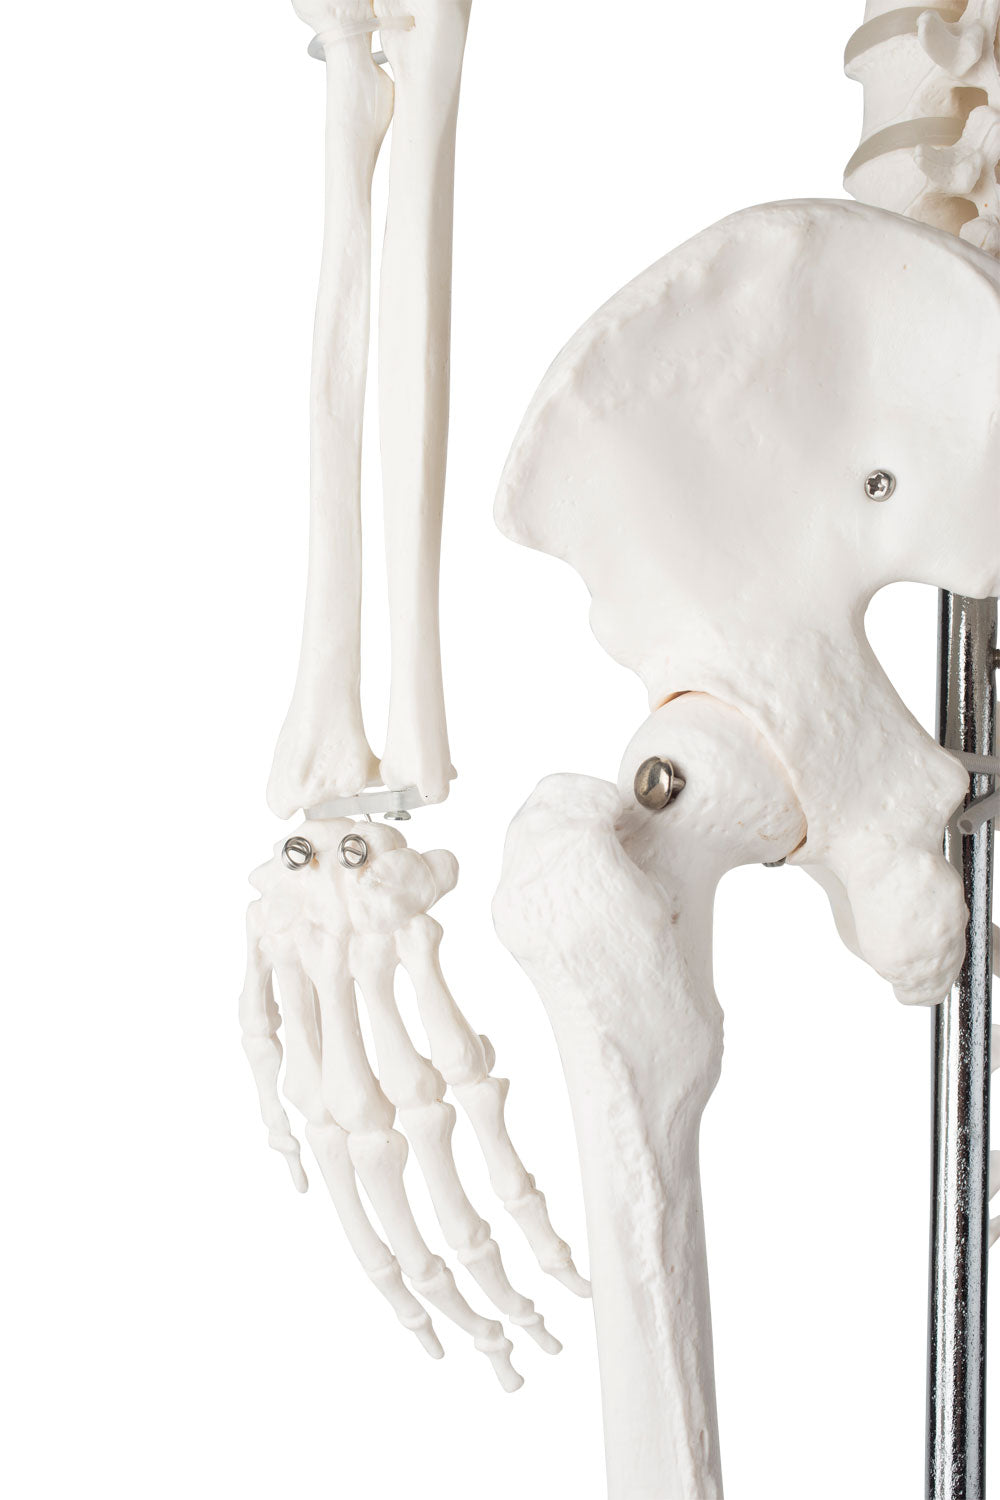 Skelettmodell på 85 cm med hög detaljgrad